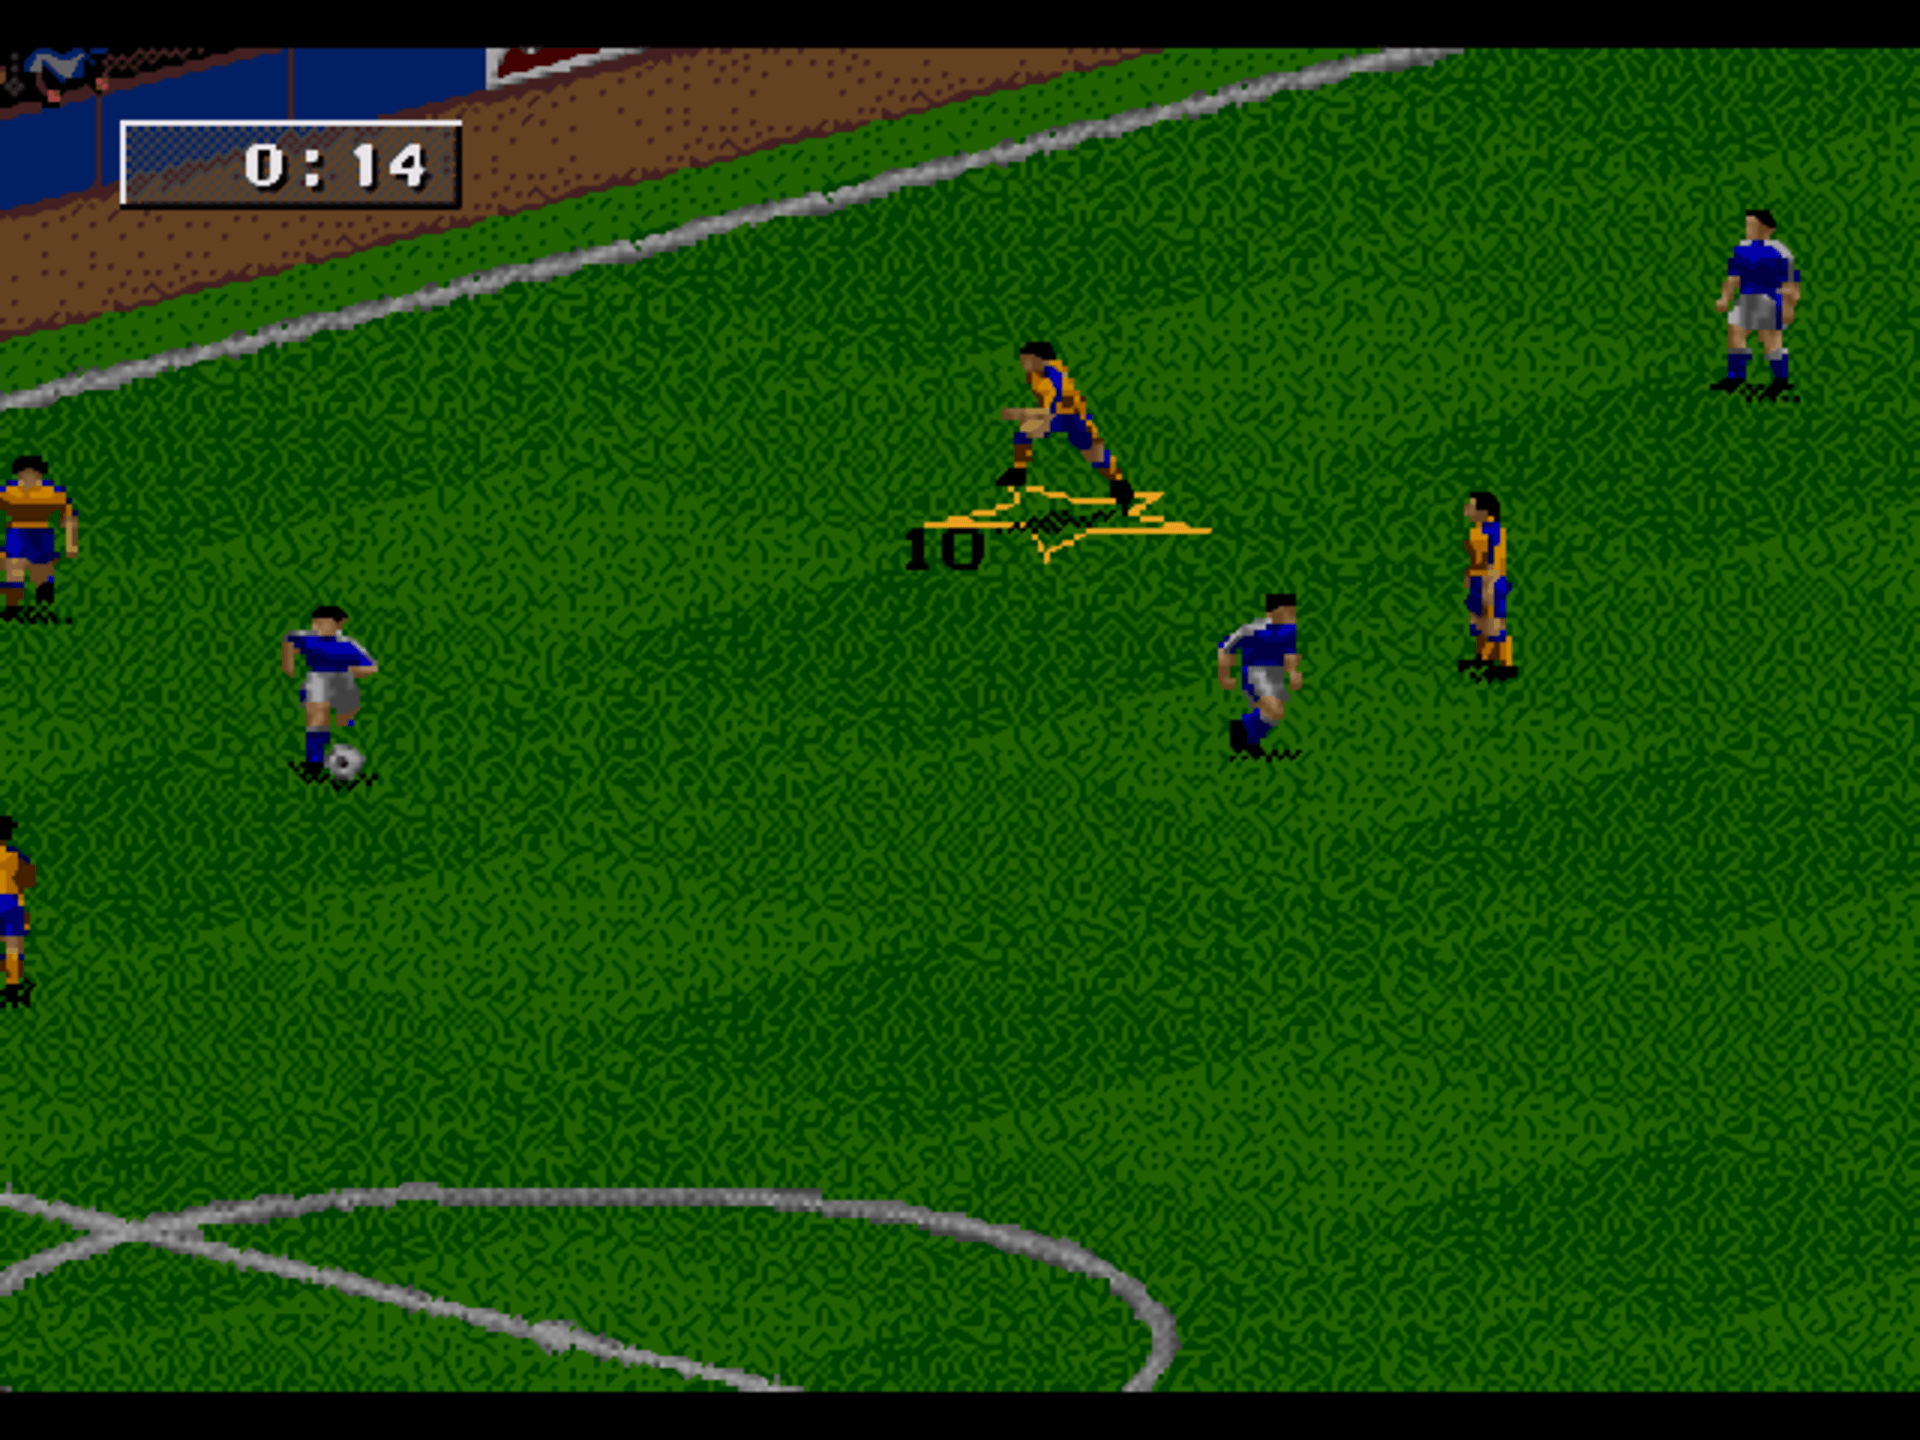 FIFA Games for Sega Genesis/Mega Drive 